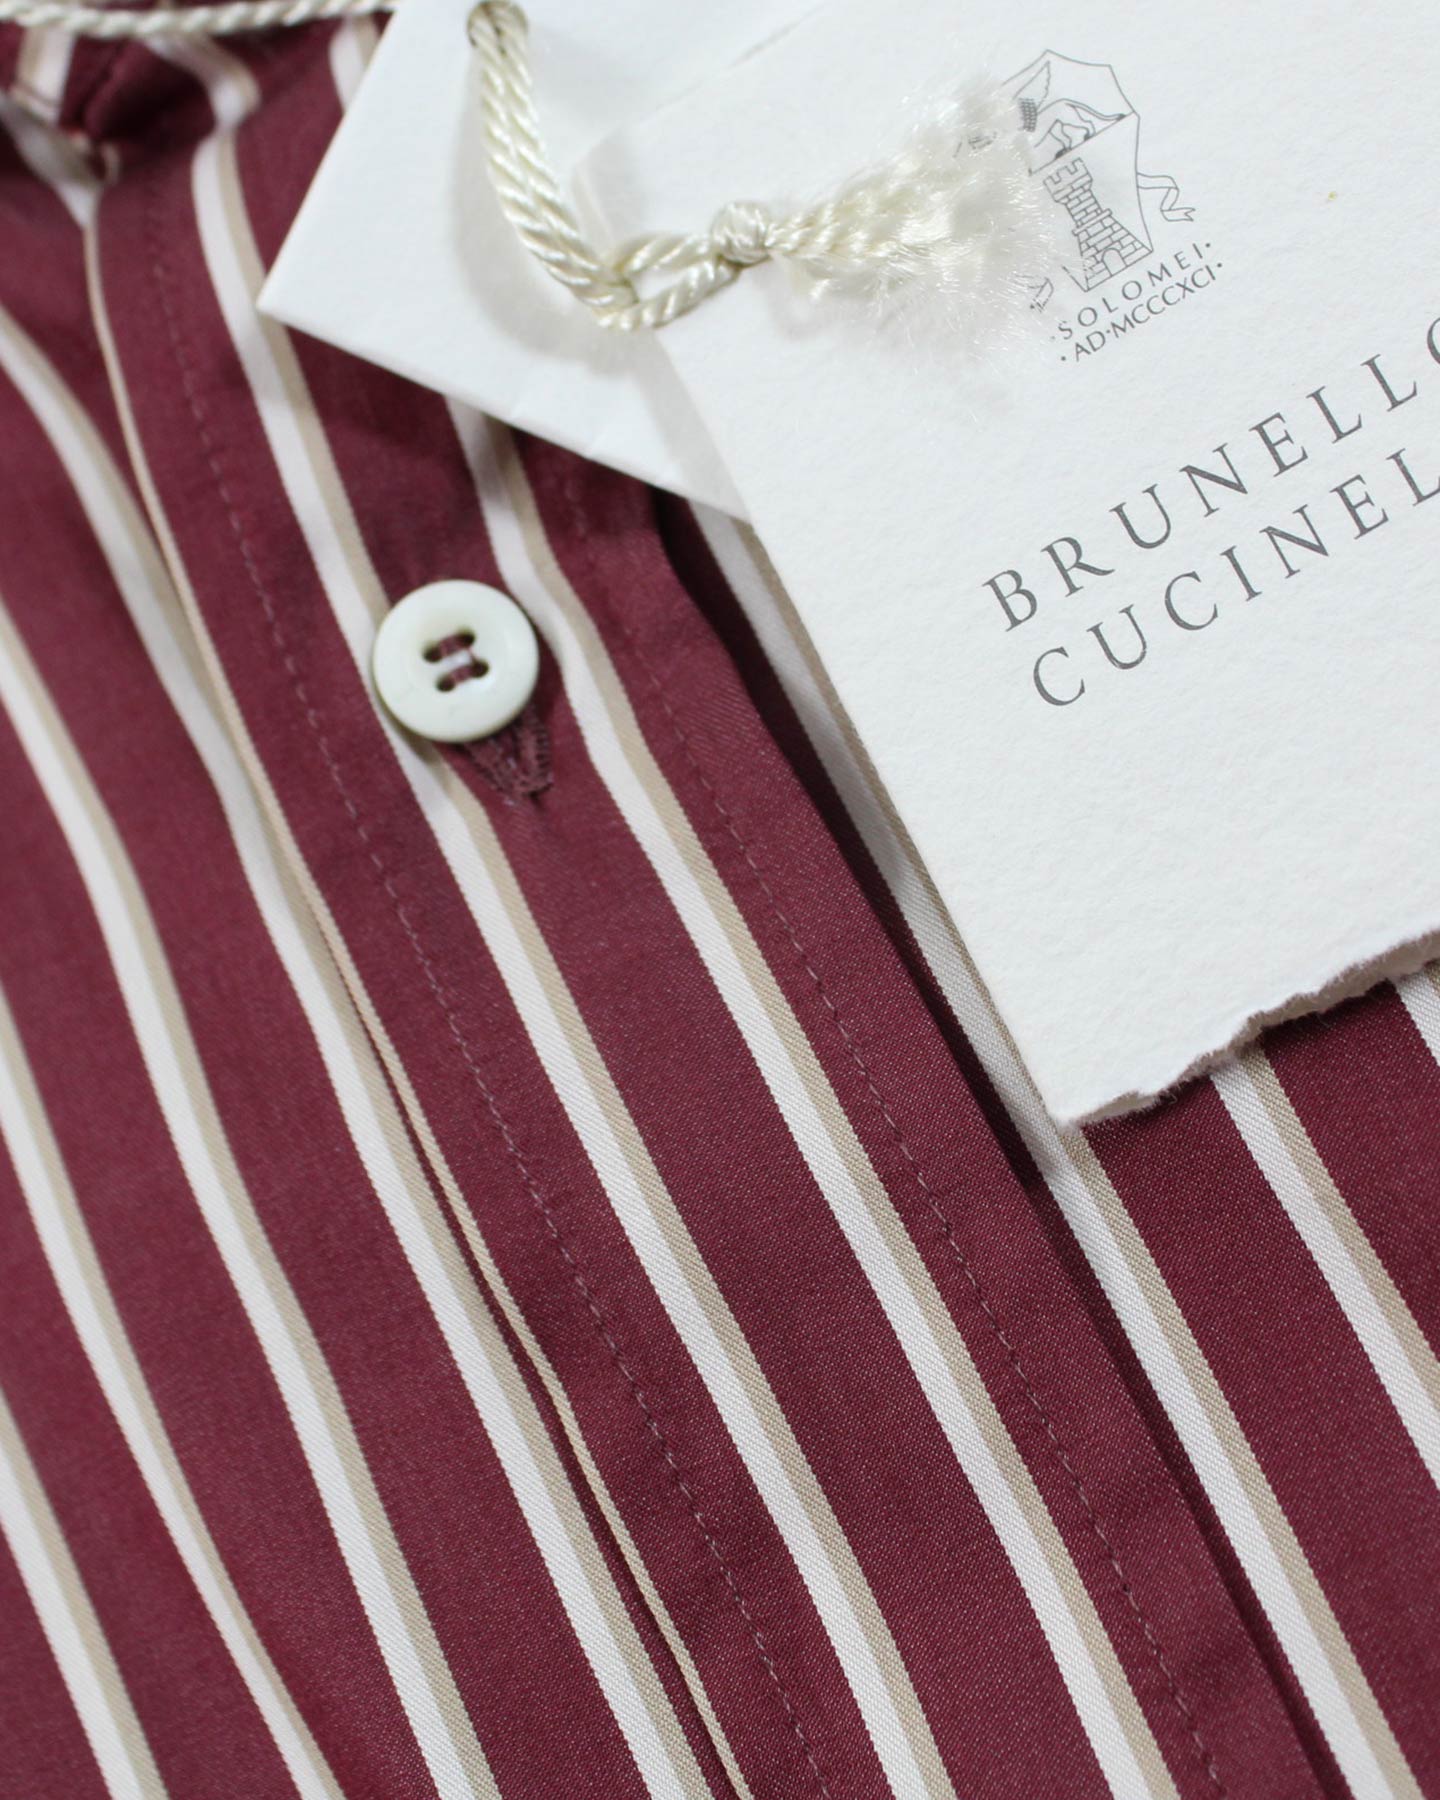 Brunello Cucinelli Shirt Maroon Stripes 